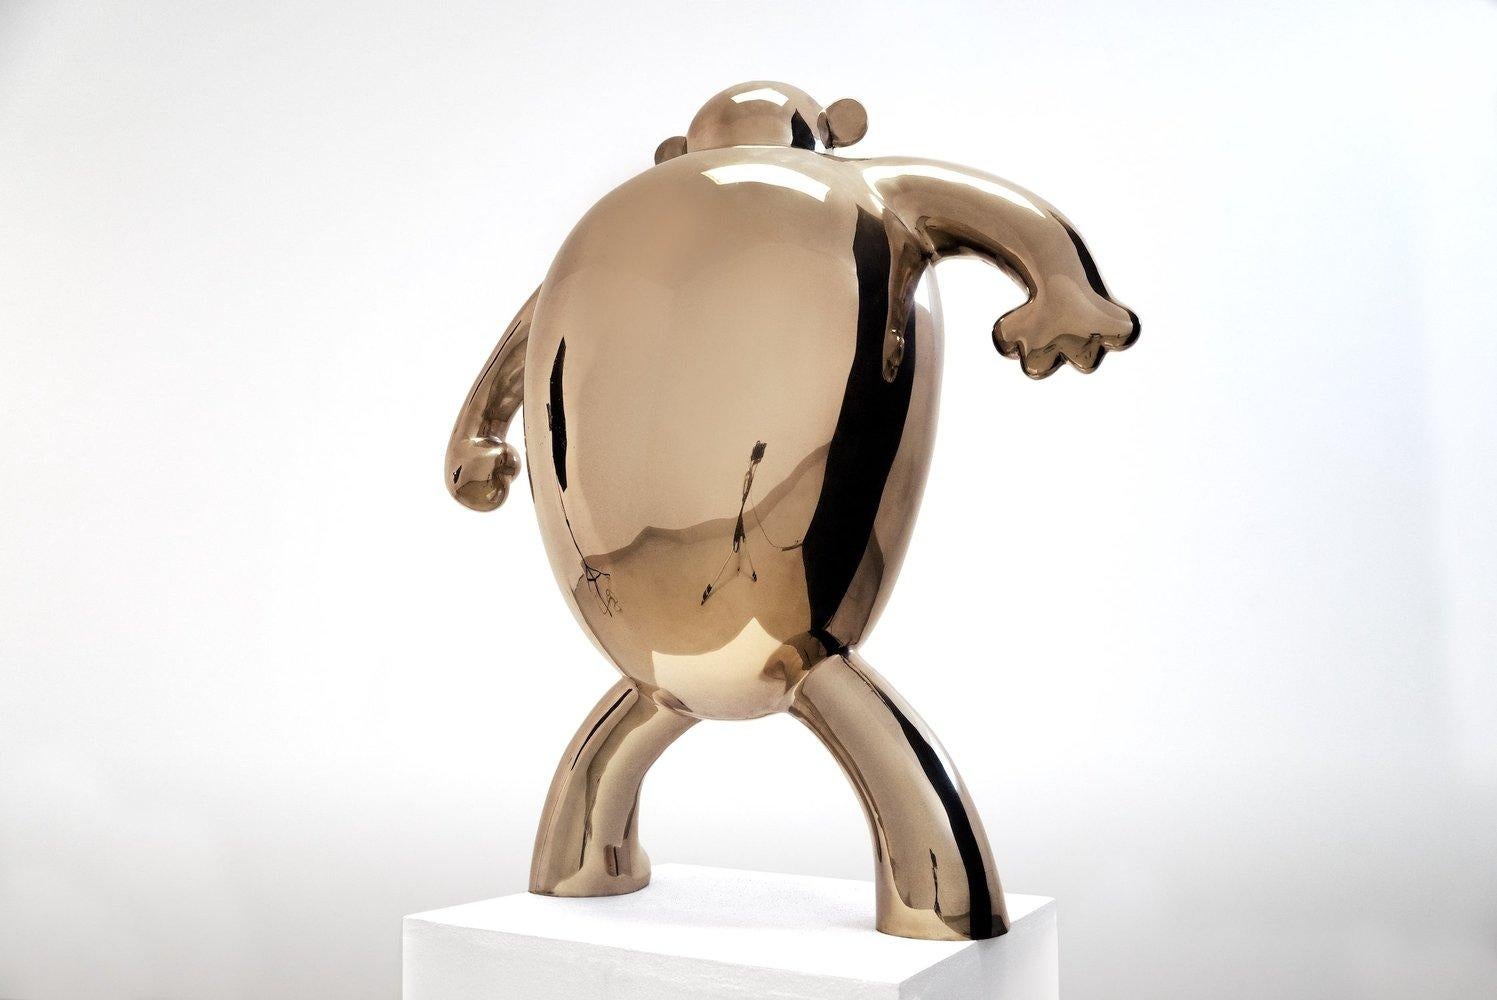 B.U.M. (pour Big Ugly Monkey), de la série Monsters. Sculpture en bronze poli, 88 cm × 83 cm × 35 cm.
Edition de 8 + 4 A.P.